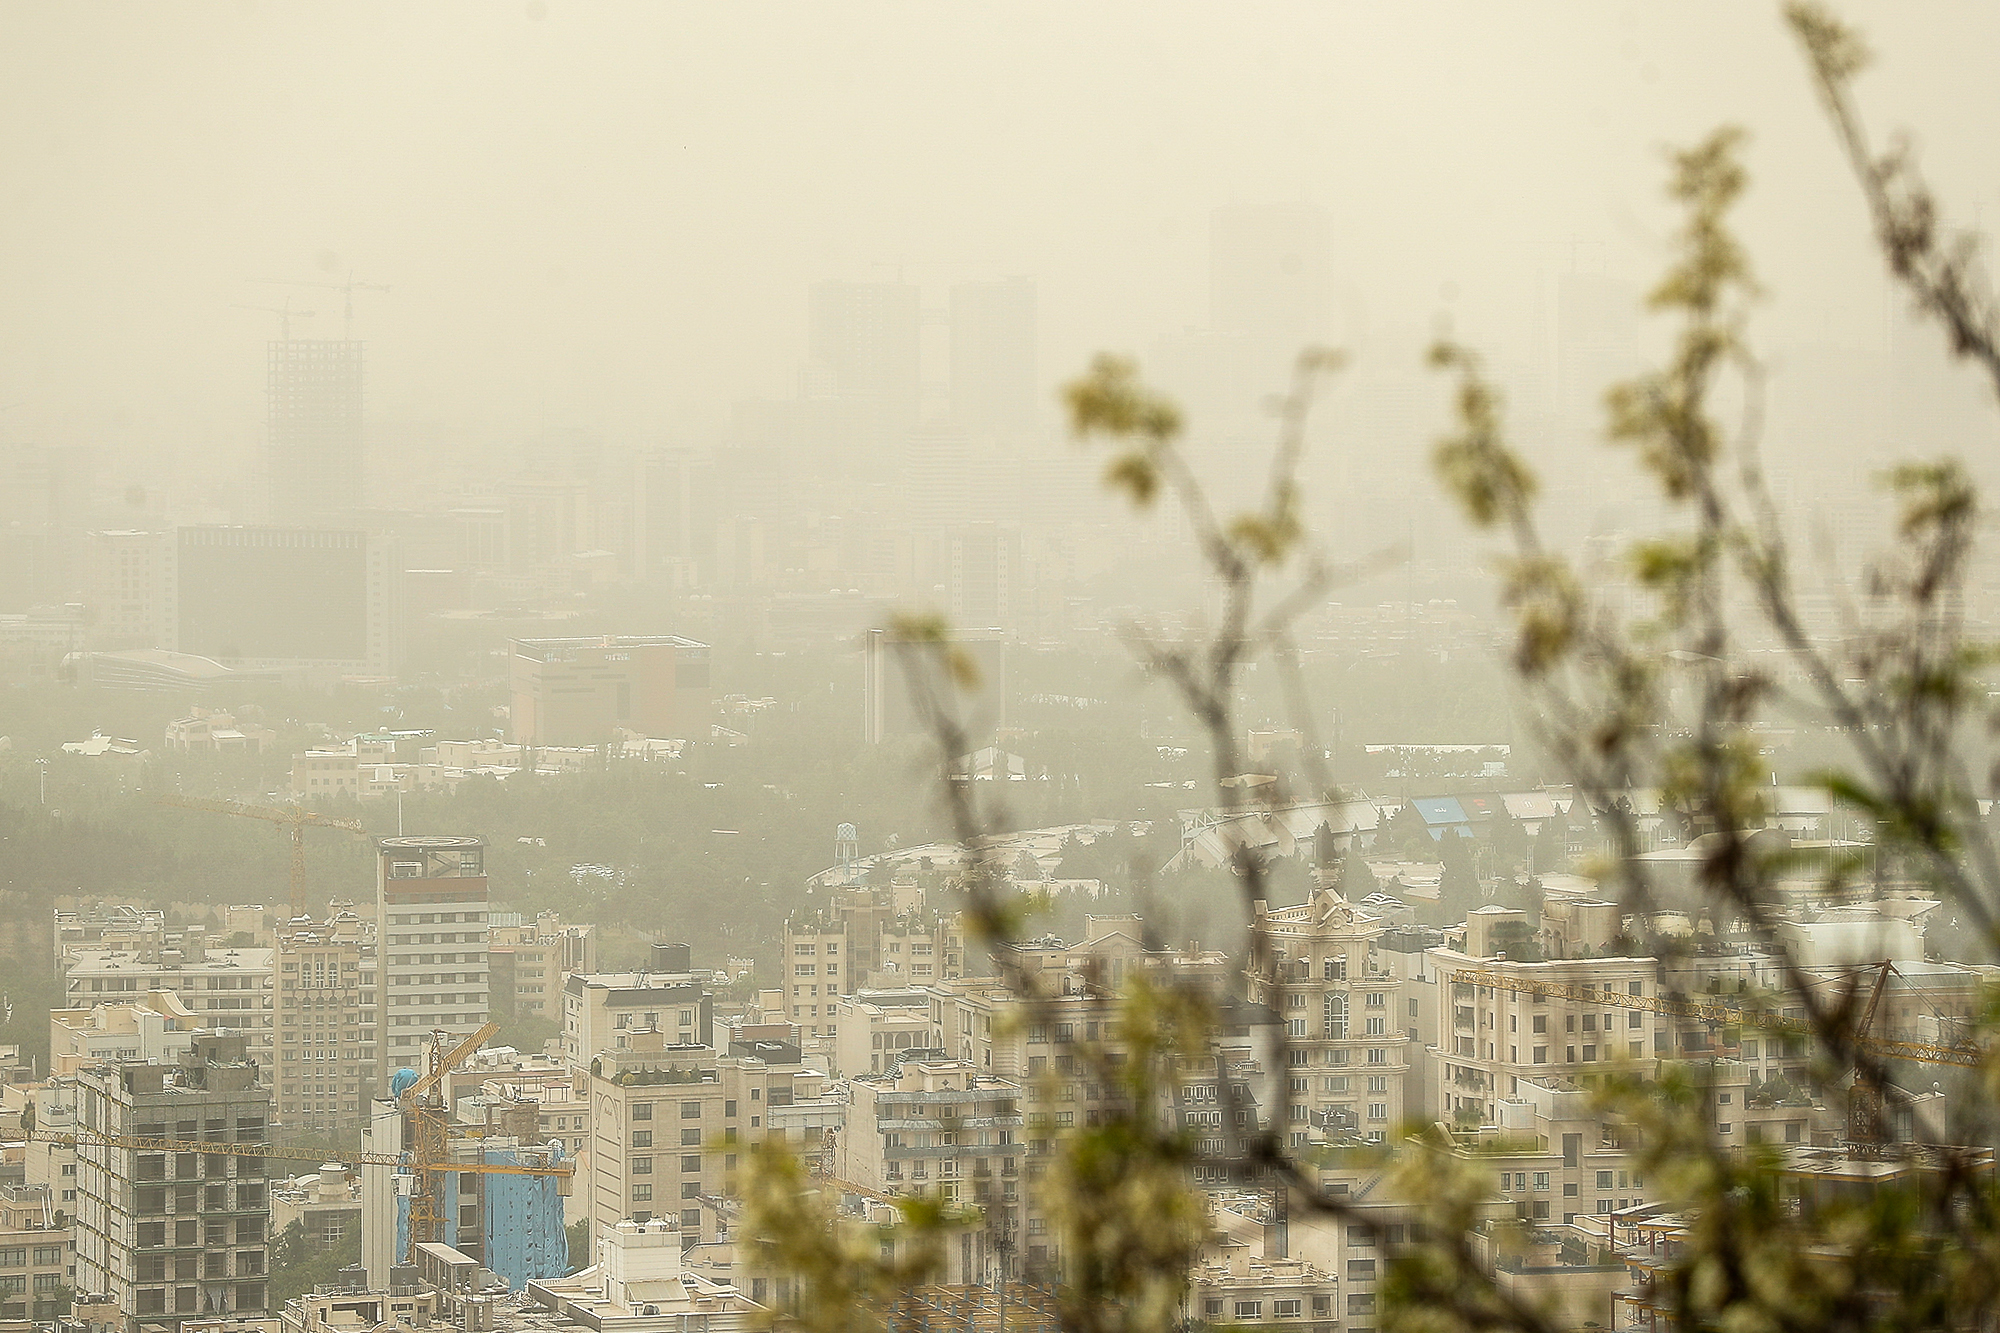 آلودگی هوای تهران در اثر ریزگردها و گرد و غبار